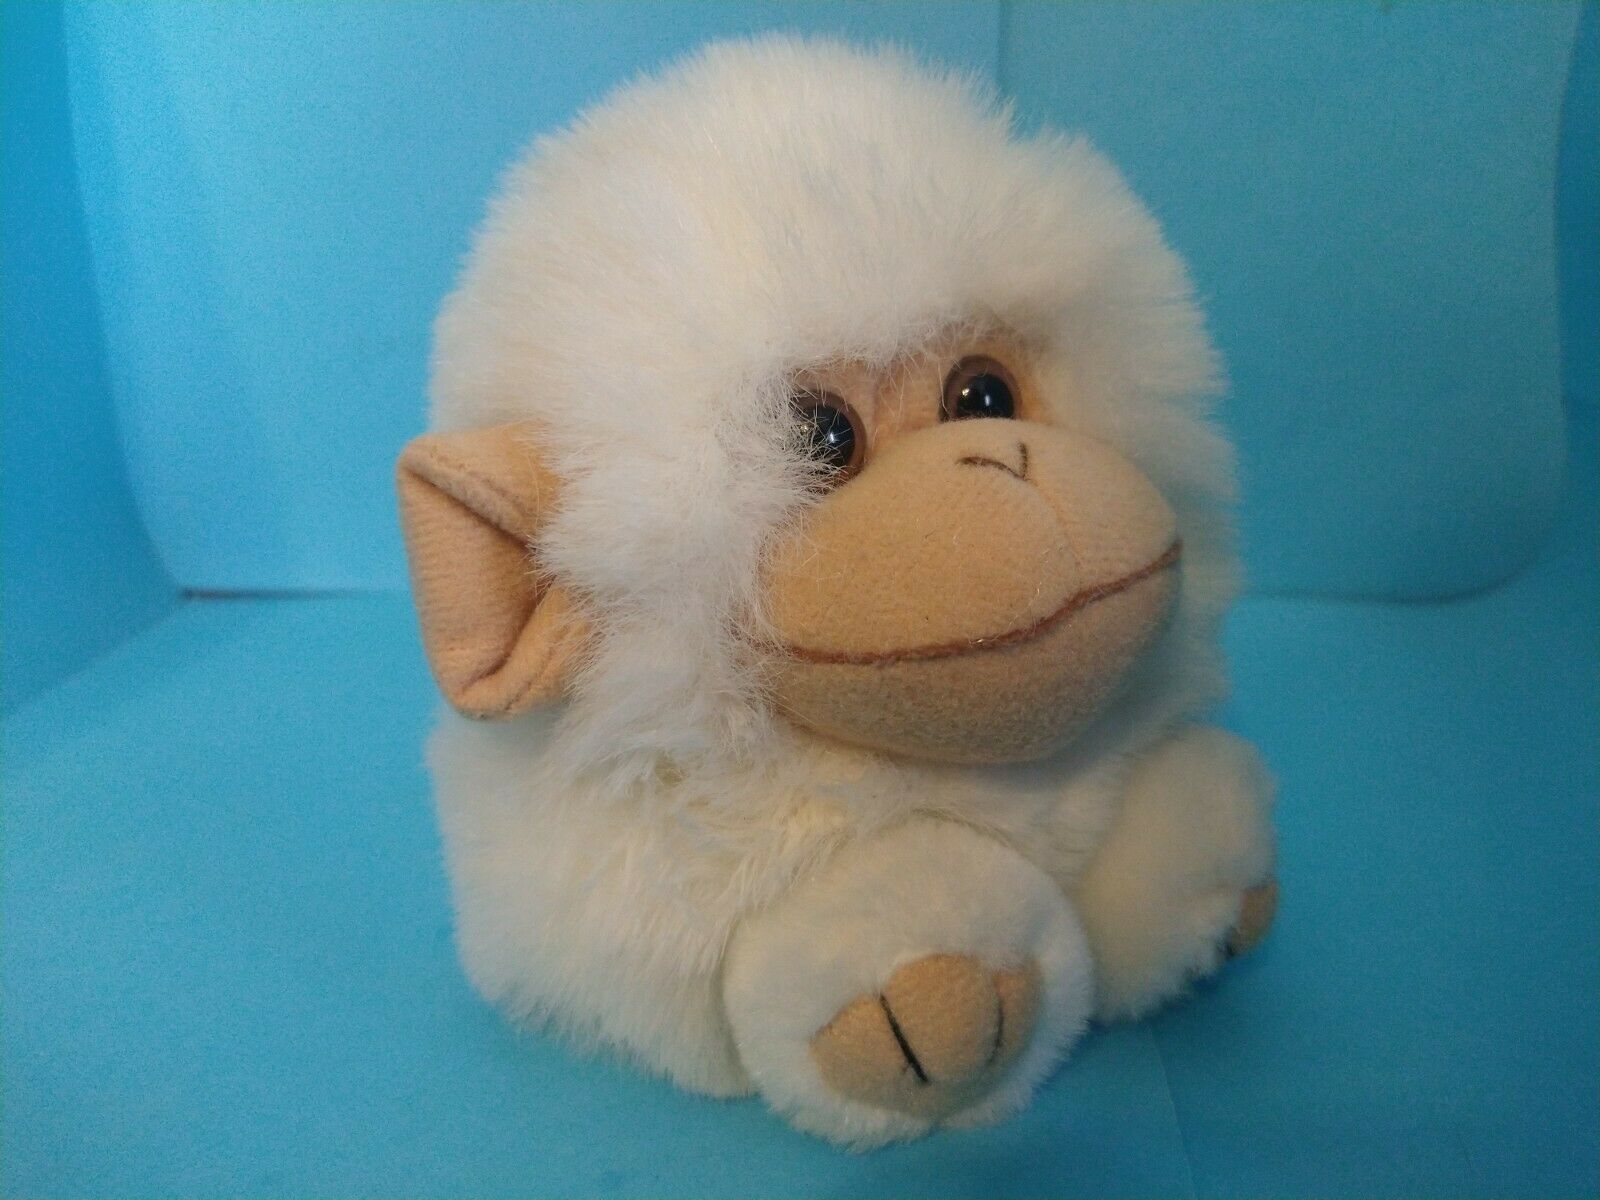 1994 Swibco Puffkins Plush Trixy White Monkey Chimp Bean Bag 5"